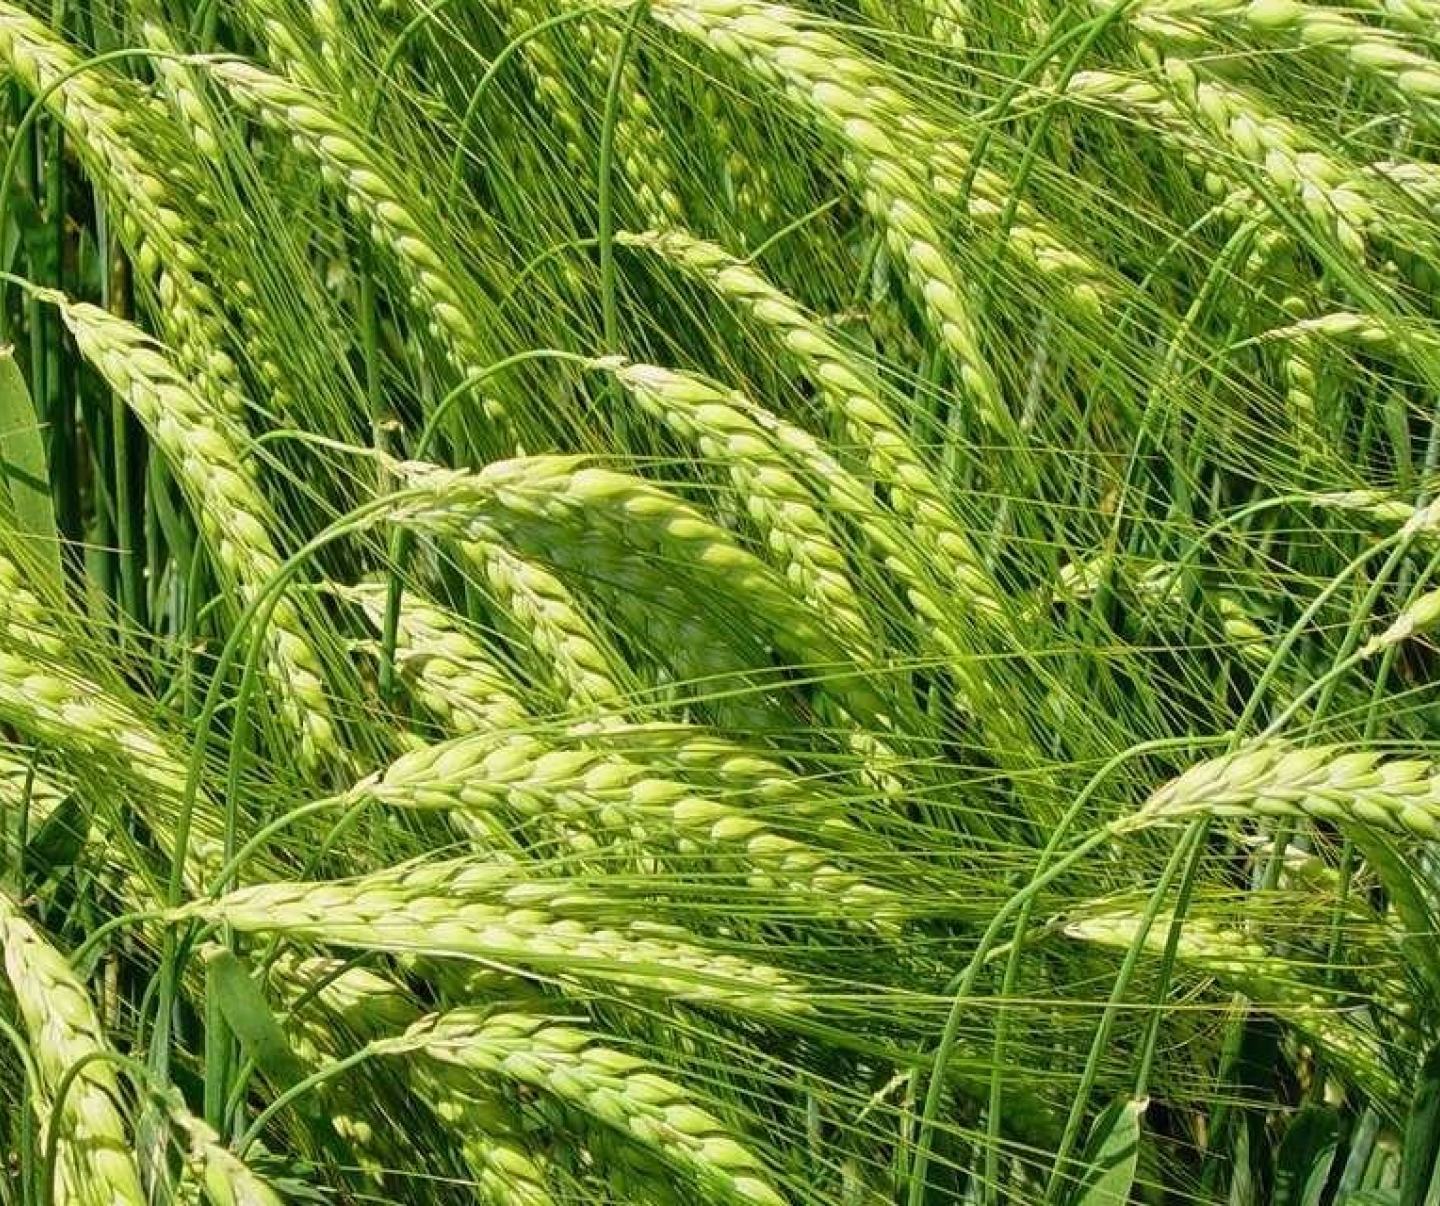 Green barley in field